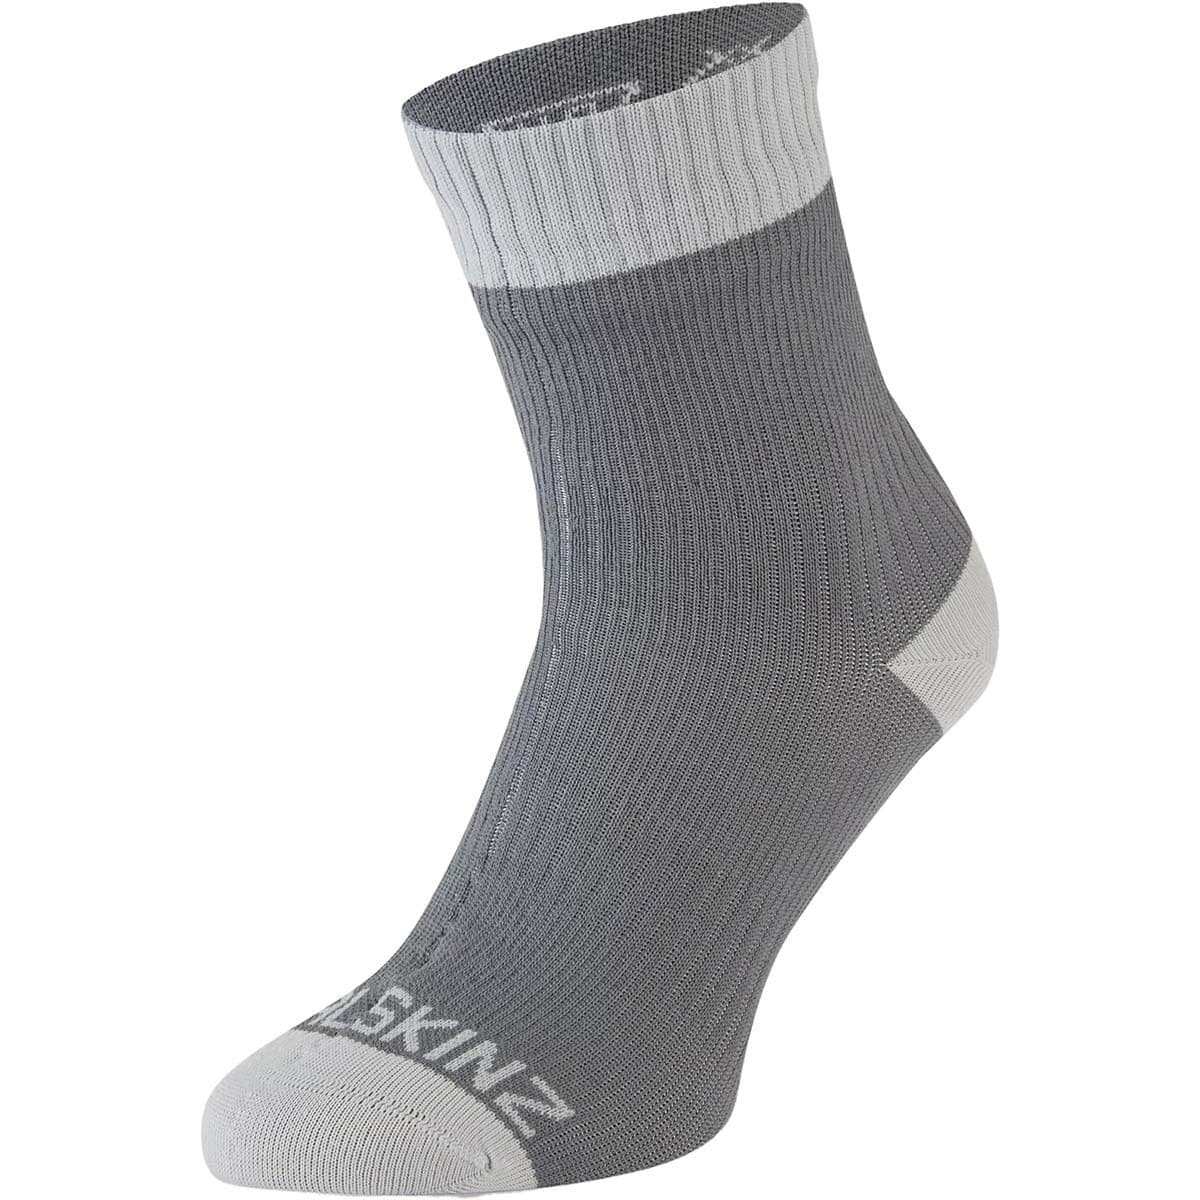 SealSkinz Wretham Waterproof Warm Weather Ankle Length Sock